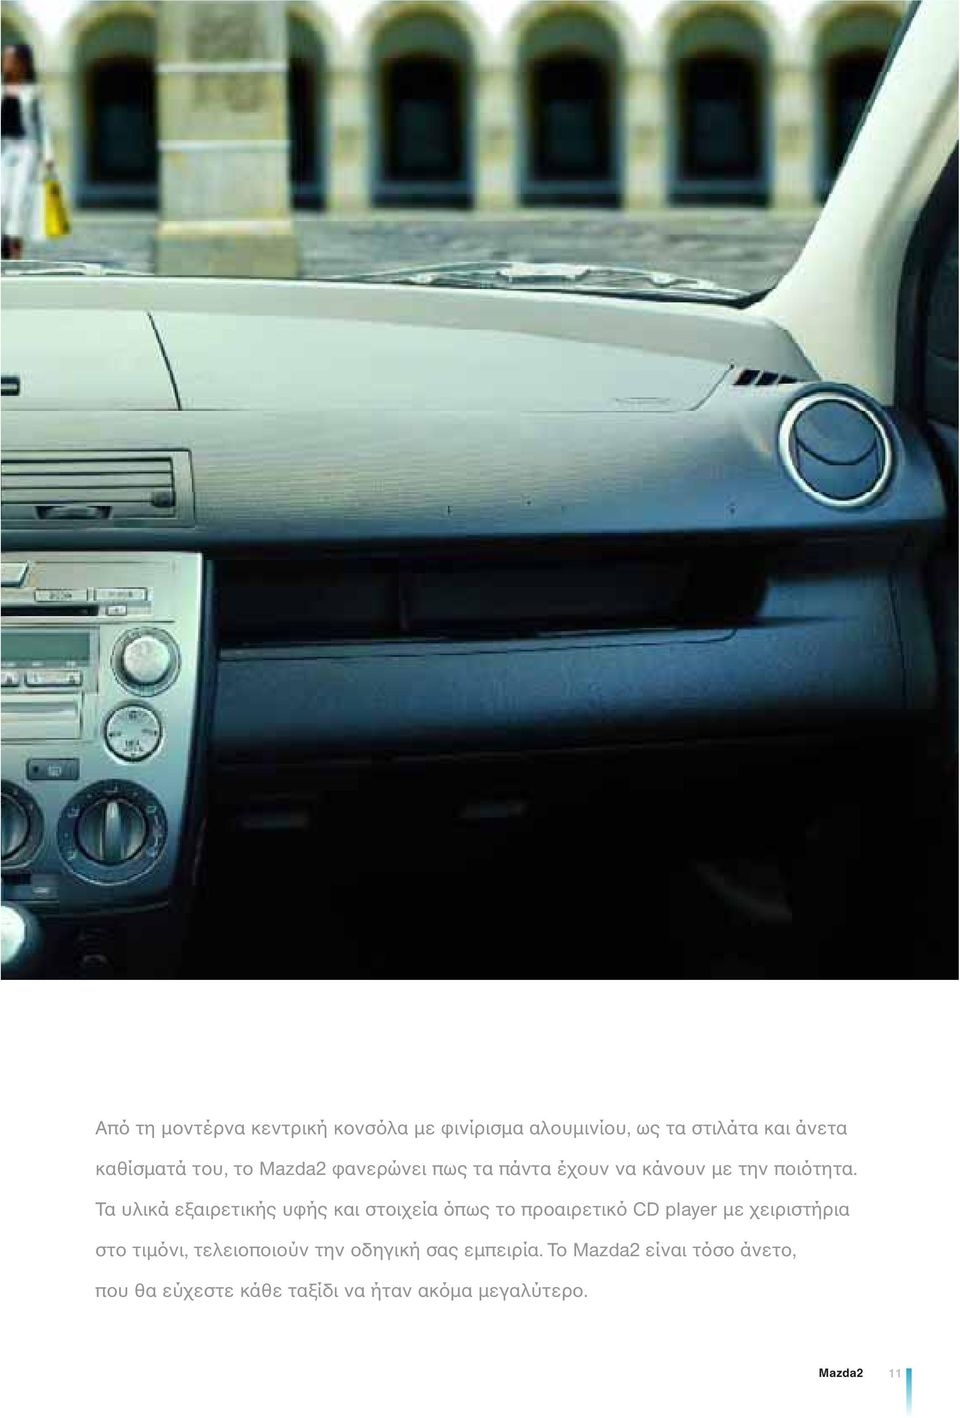 Τα υλικά εξαιρετικής υφής και στοιχεία όπως το προαιρετικό CD player με χειριστήρια στο τιμόνι,